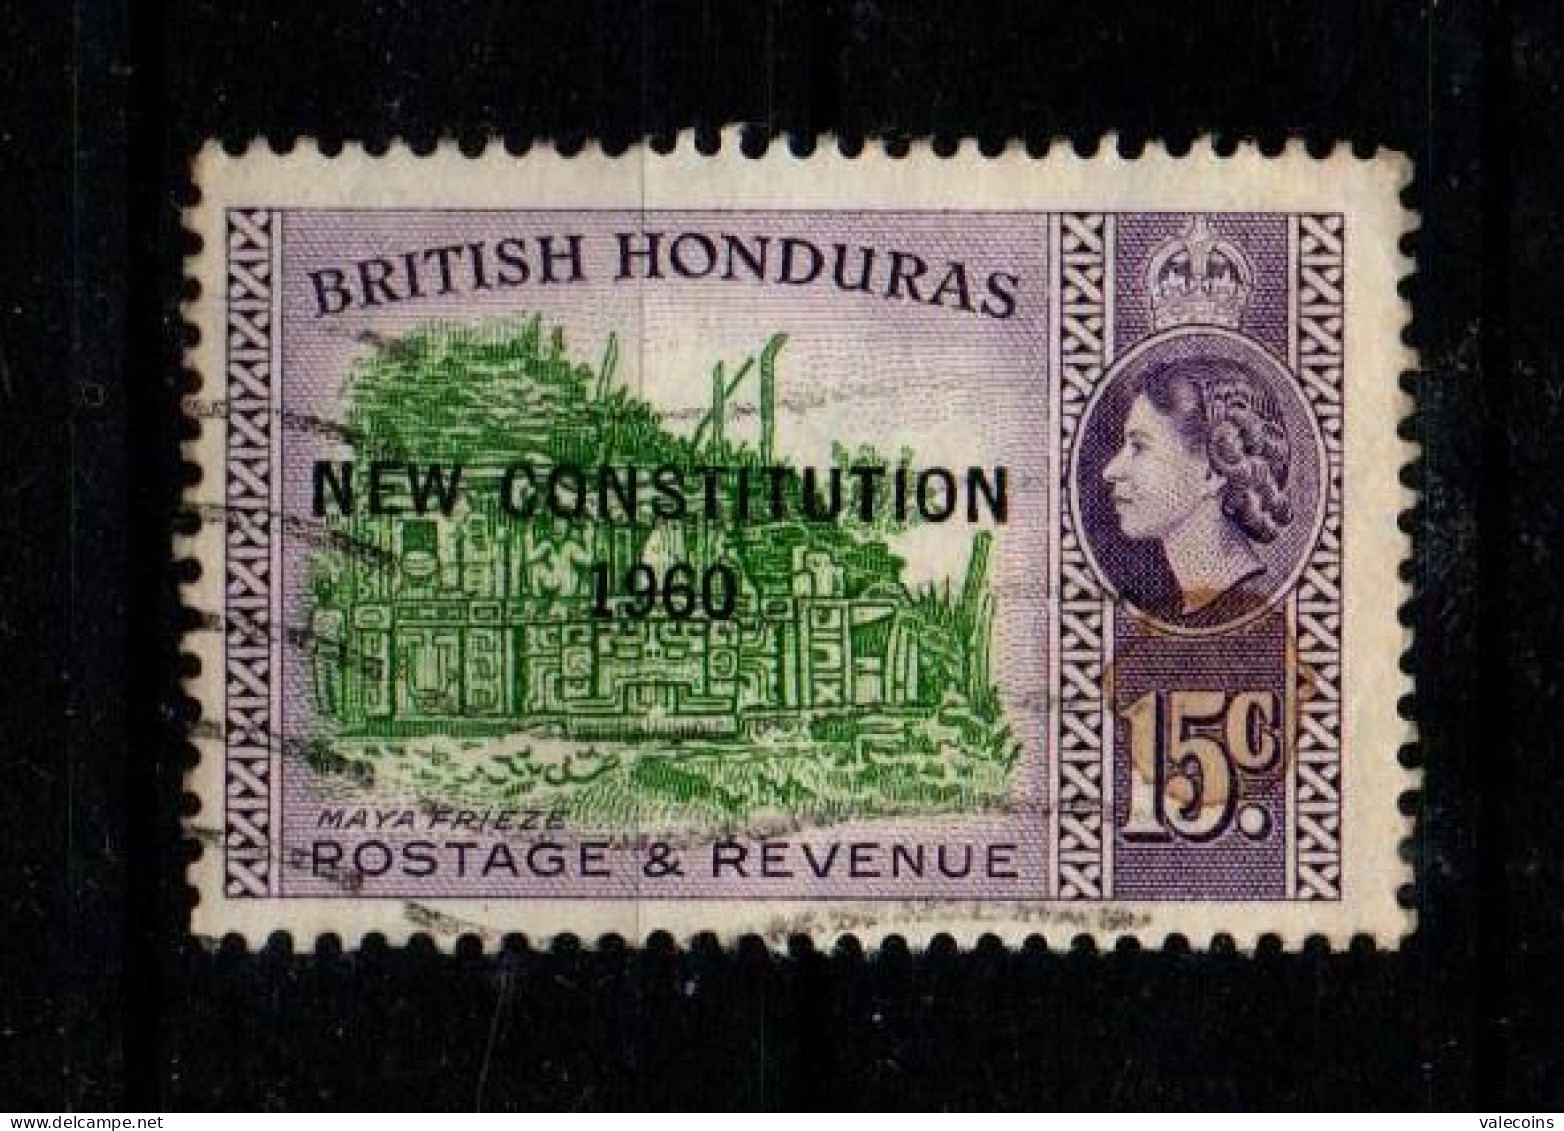 BRITISH HONDURAS (BELIZE) - 1961 - 15 Cent - New Constitution 1960 - Queen Elizabewth II - Used Stamp         MyRef:L - Britisch-Honduras (...-1970)